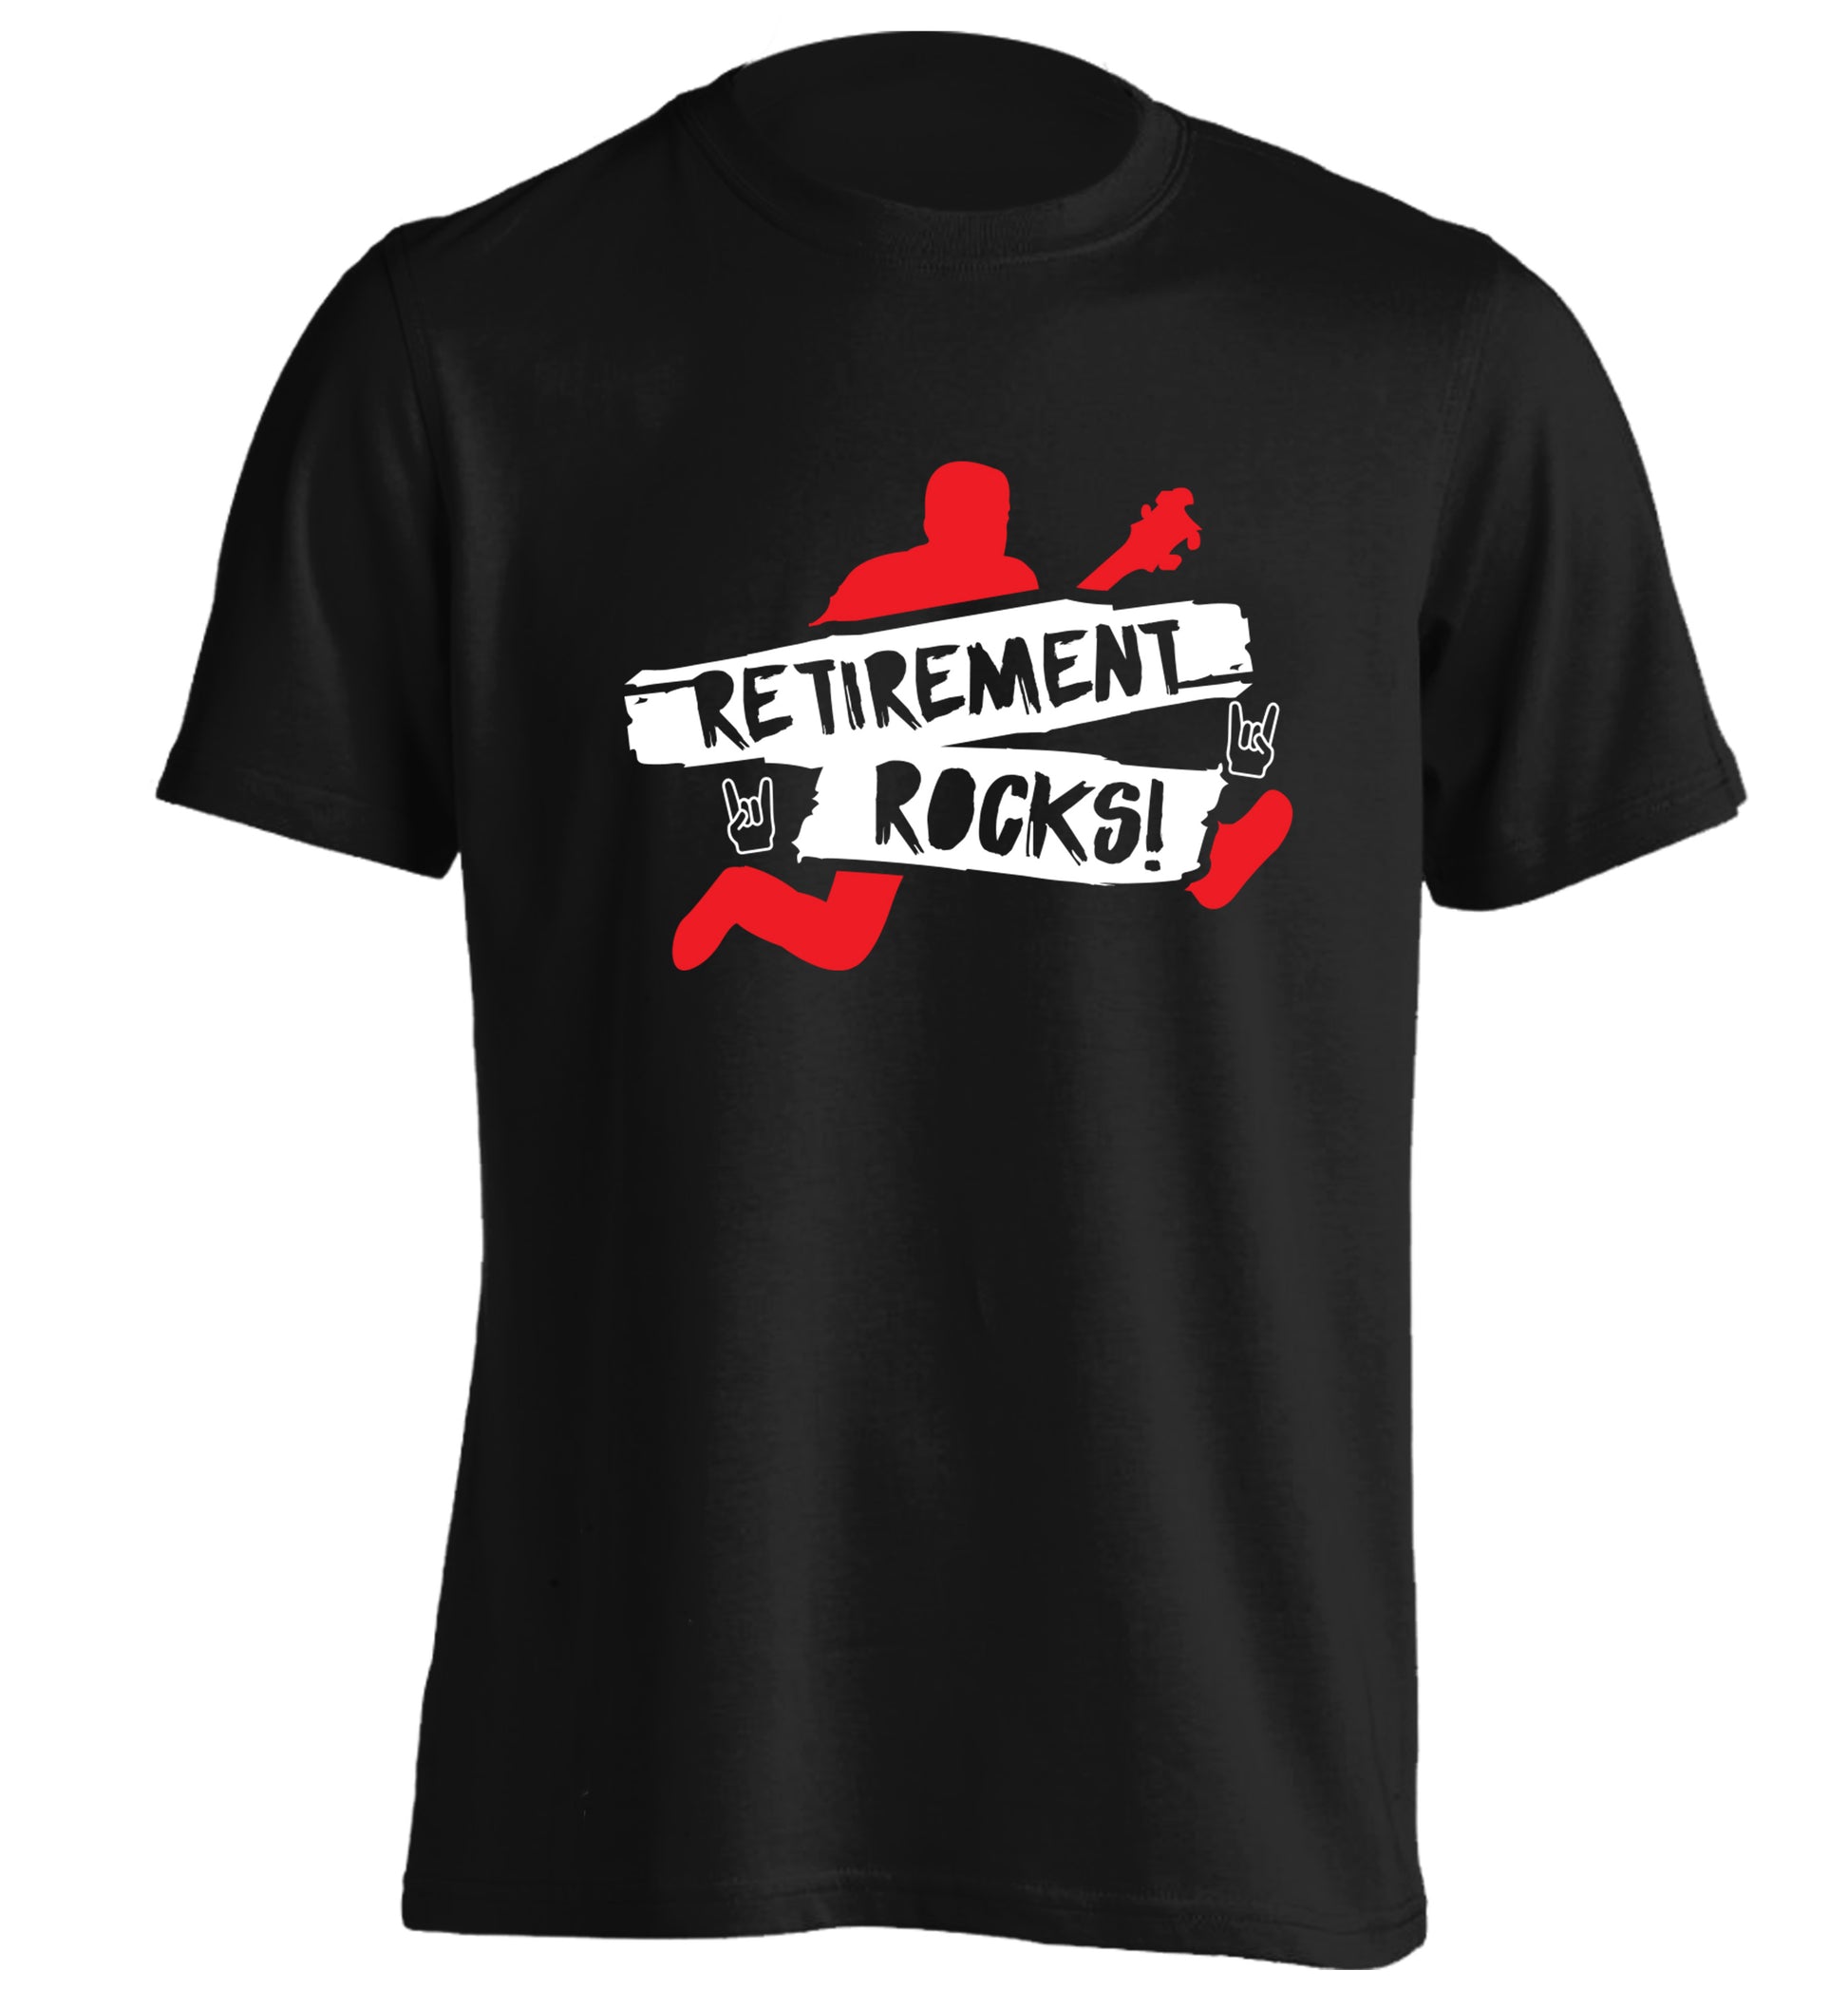 Retirement Rocks adults unisex black Tshirt 2XL